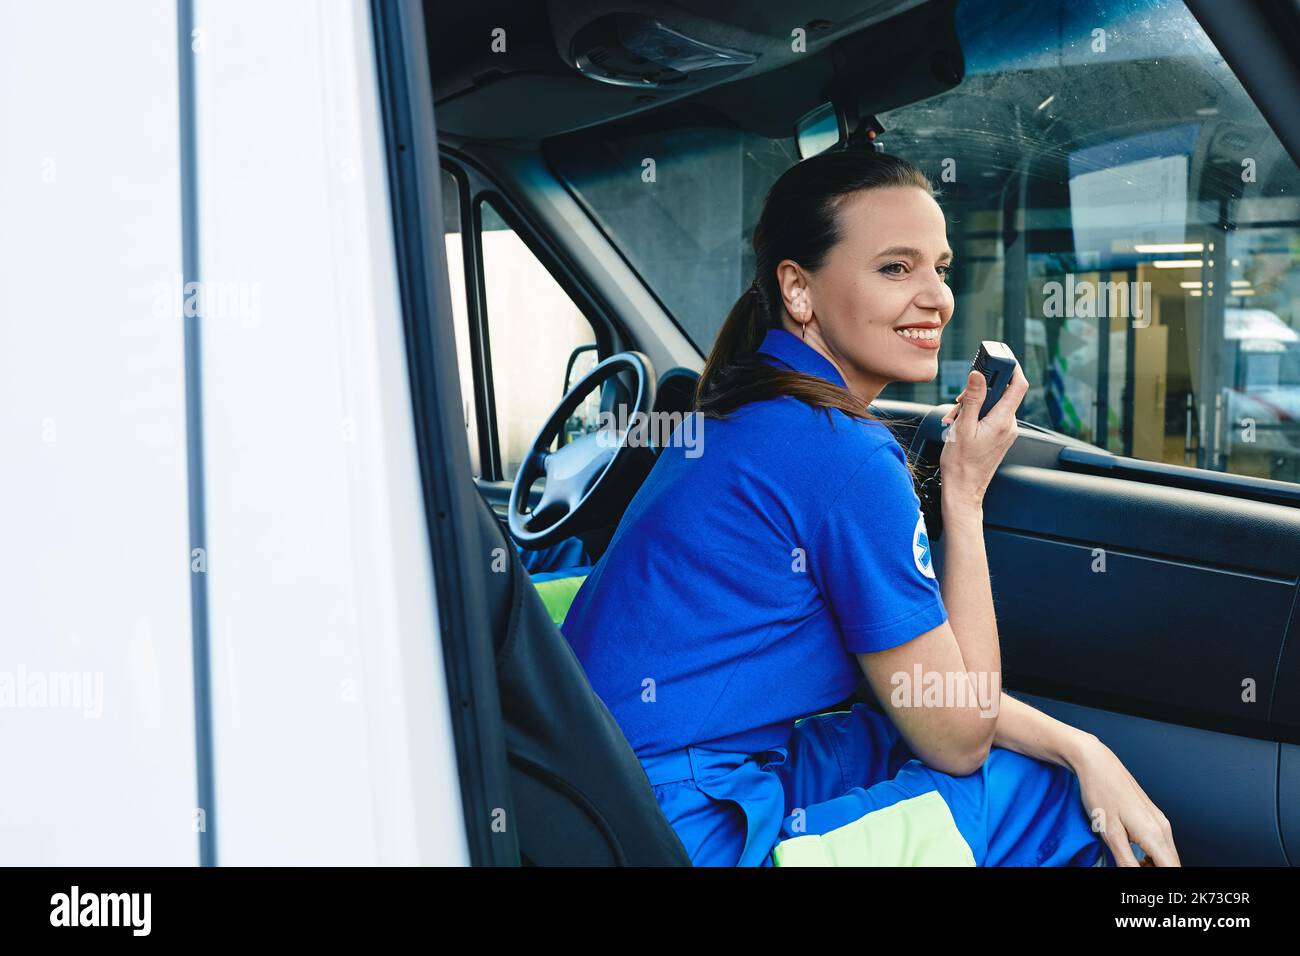 Mitarbeiter des medizinischen Notdienstes. Lächelnde Sanitäterin, die im Krankenwagen sitzt und über ein tragbares Radio spricht Stockfoto